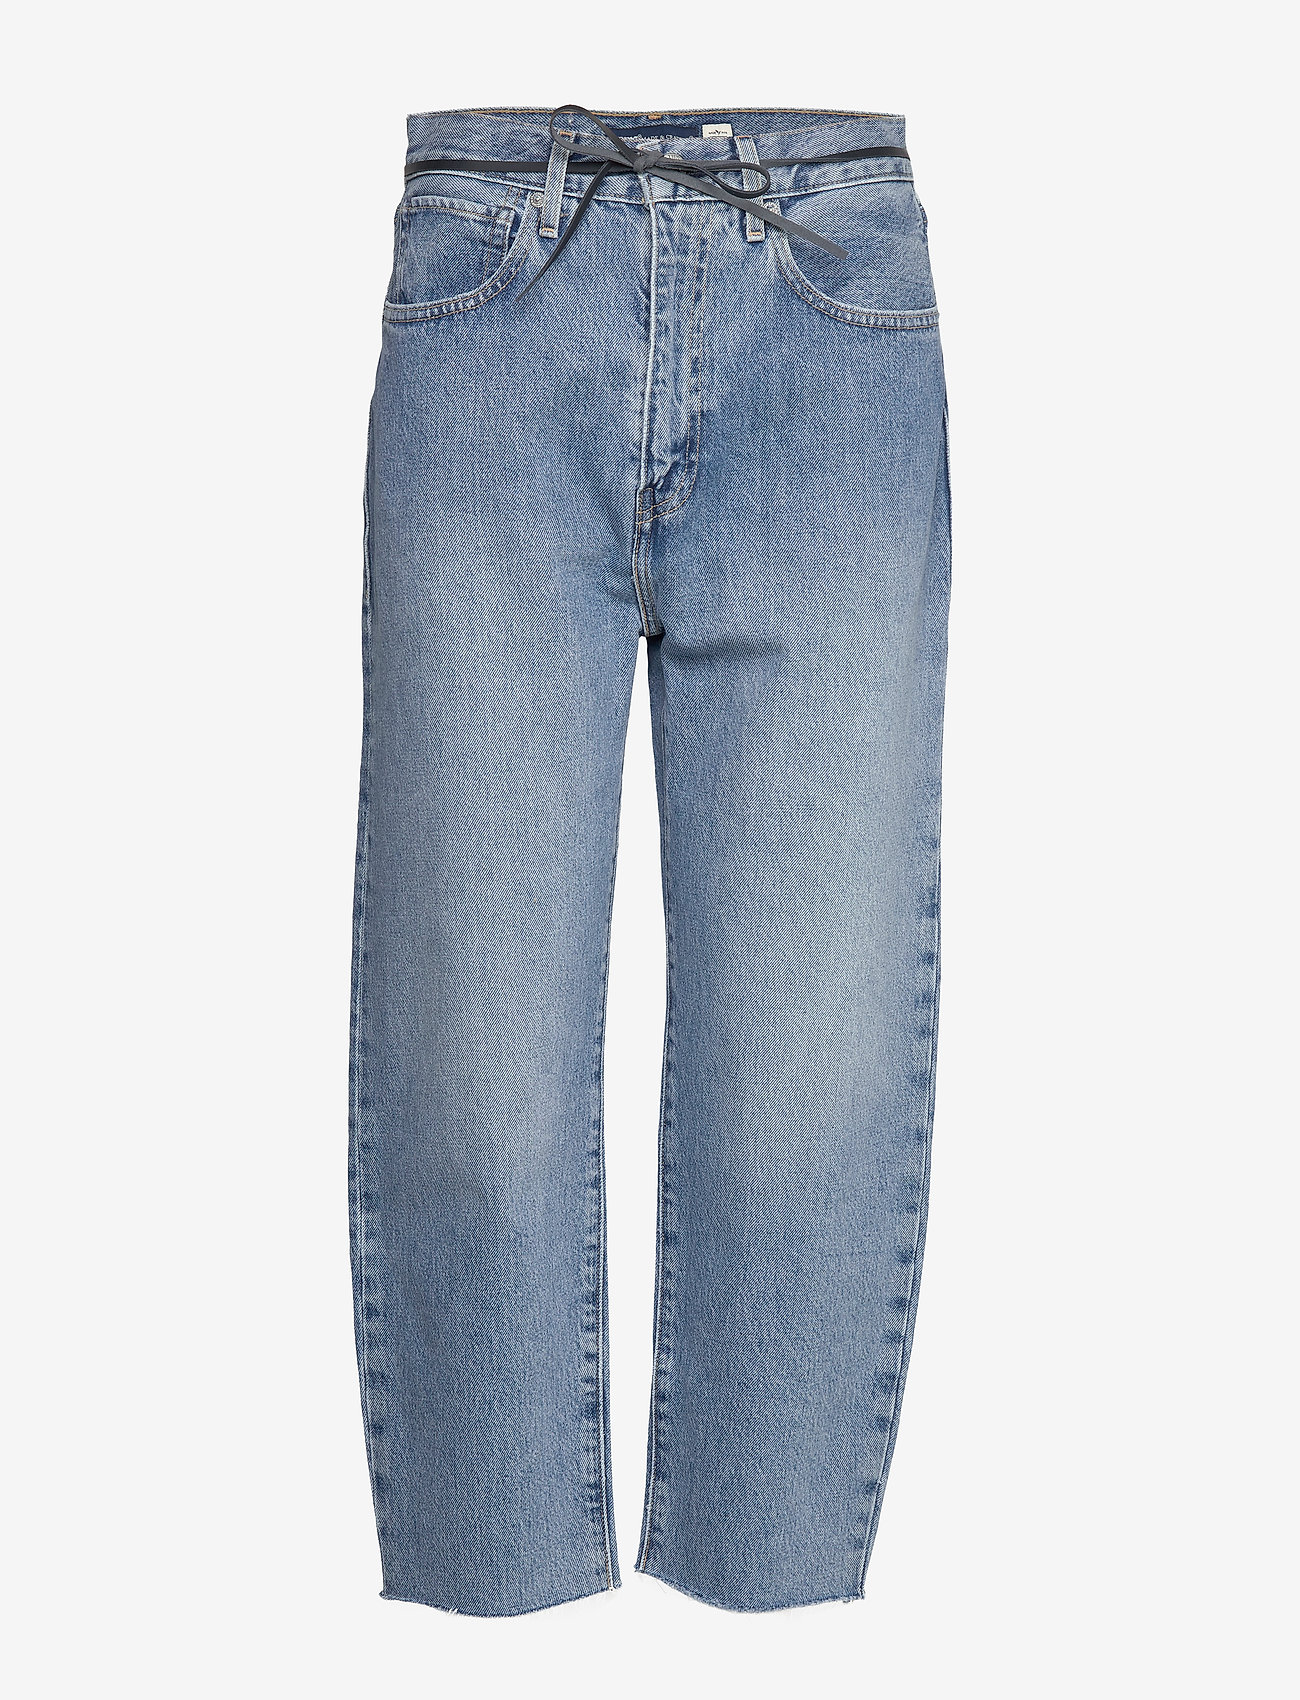 levis 105 jeans